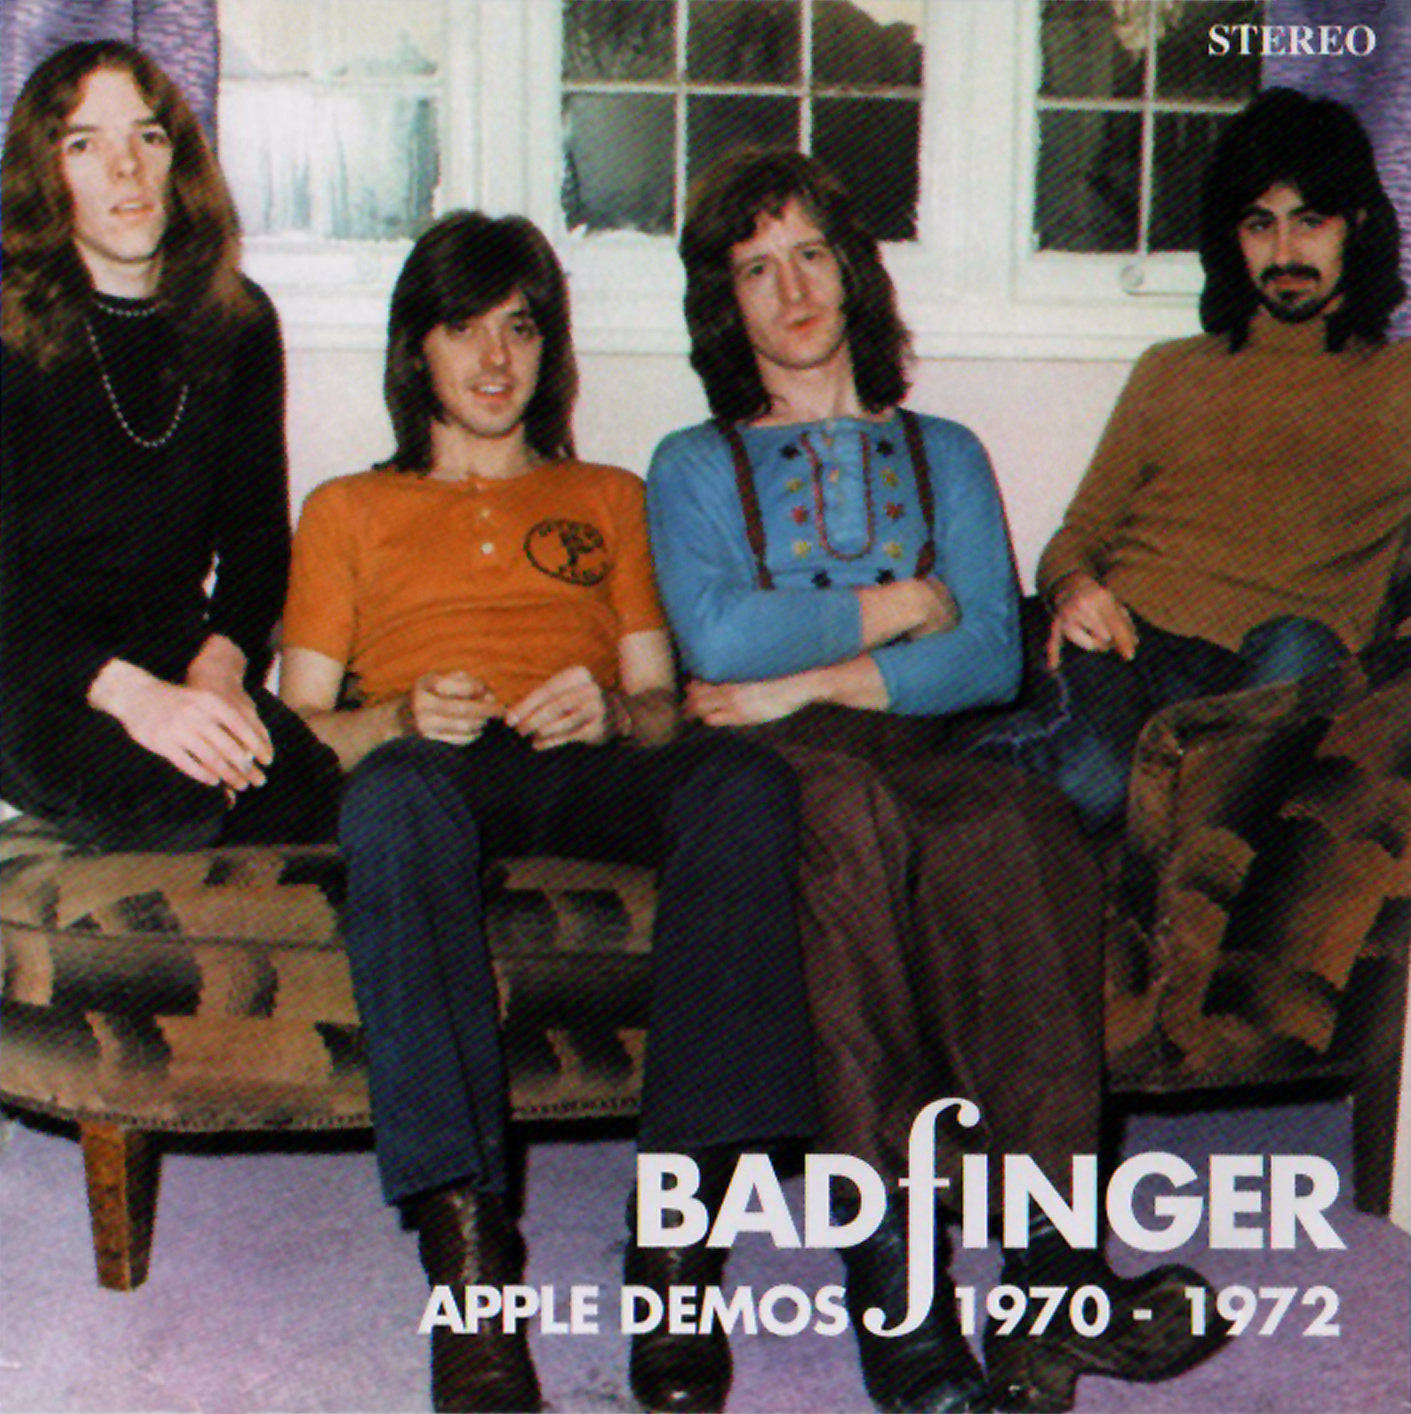 BADFINGER Apple Demos 1970 - 1970 front.jpg